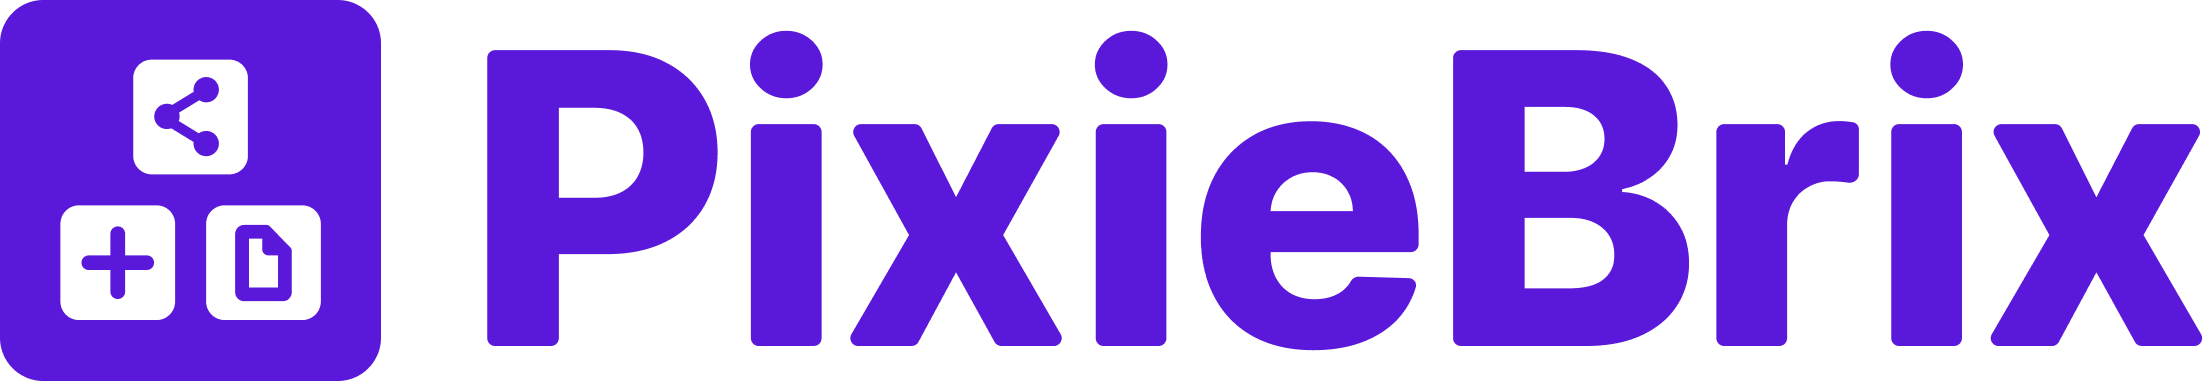 PixieBrix